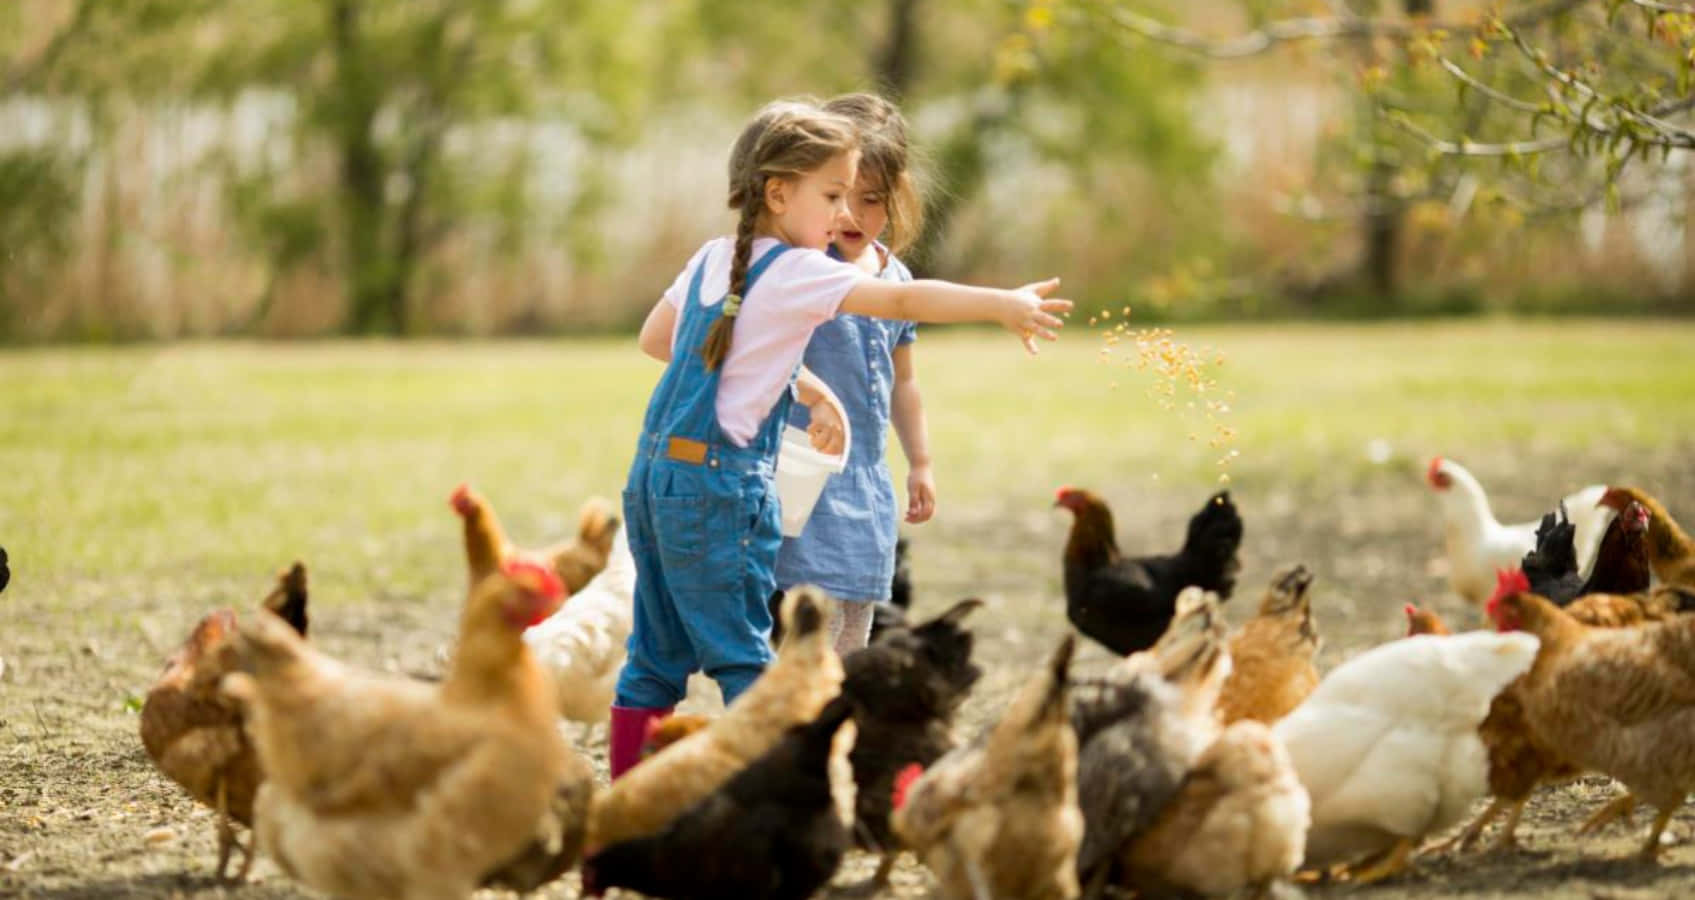 Einmädchen Füttert Hühner Auf Einem Feld.